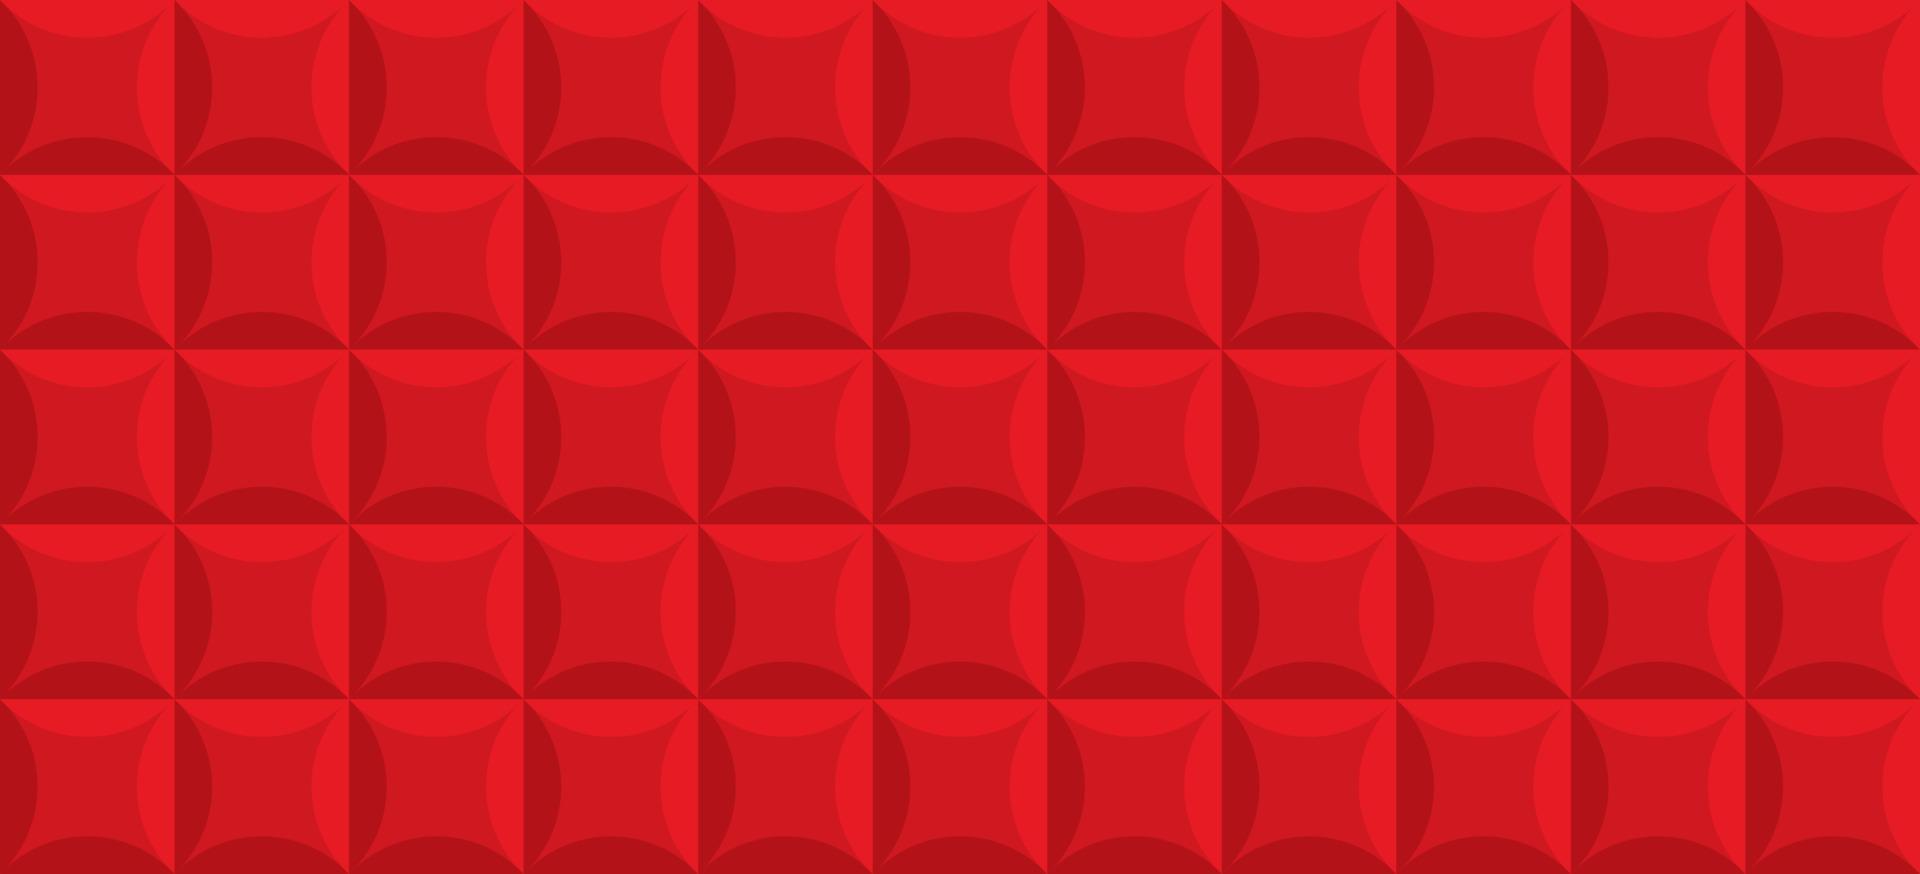 textura de telha vermelha realista para decoração de interiores com forma quadrada. modelo de superfície geométrica. fundo vintage de estofamento de couro de luxo. design de papel de parede moderno abstrato. ilustração vetorial. vetor